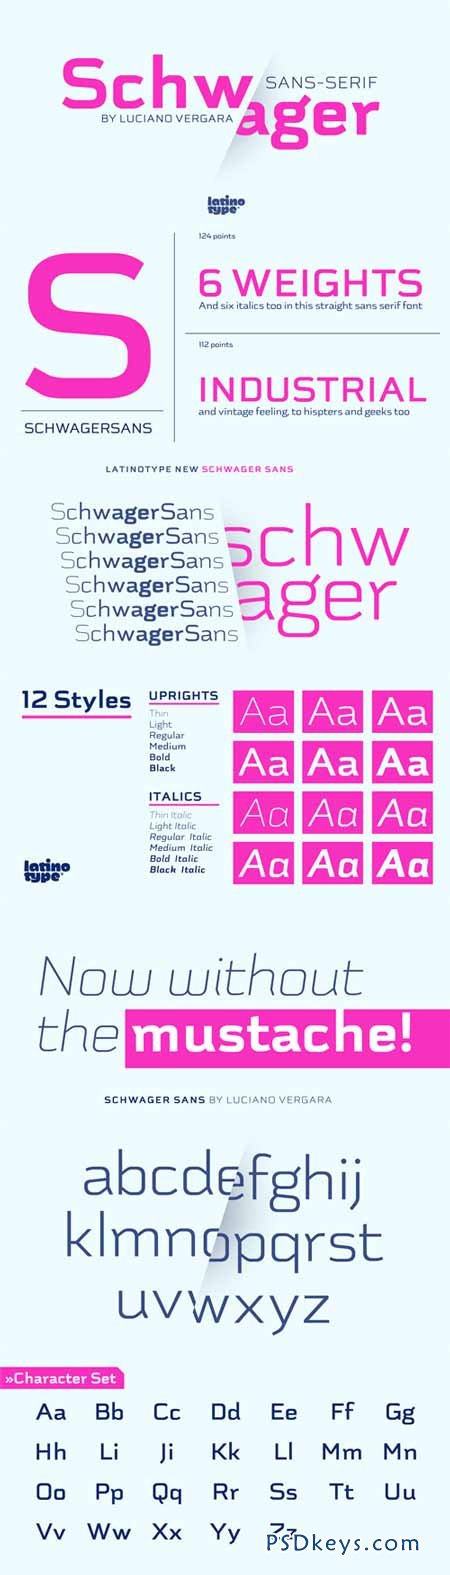 Schwager Sans Font Family - 12 Fonts for $149